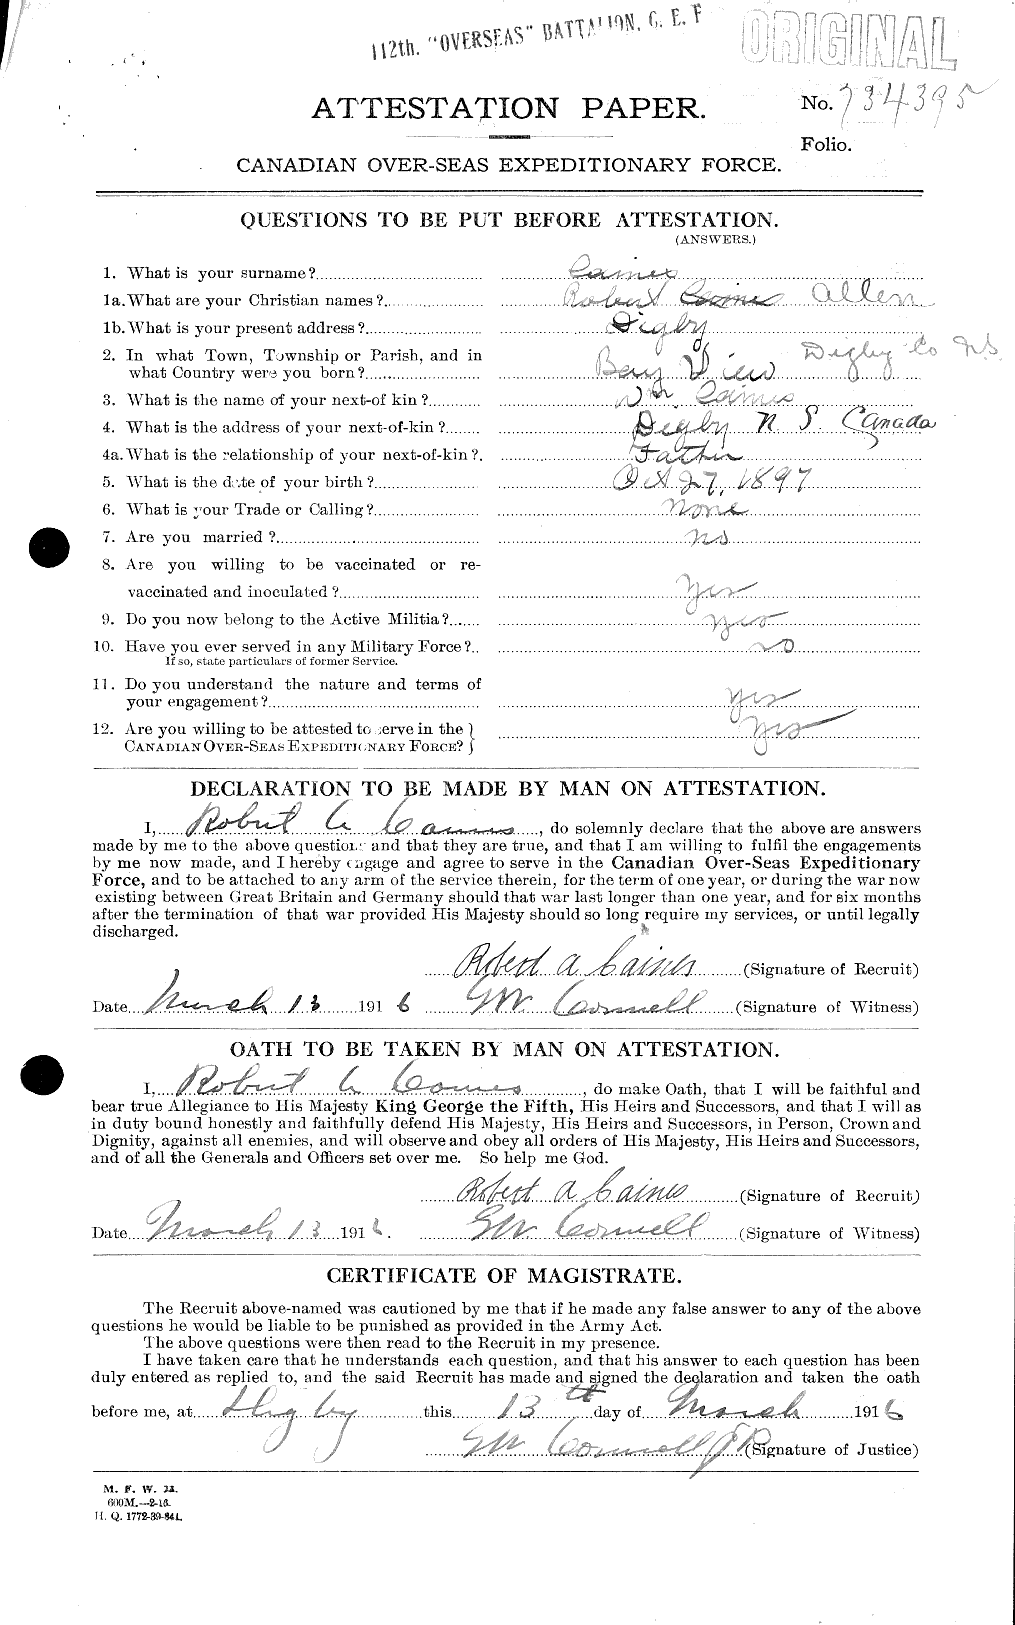 Dossiers du Personnel de la Première Guerre mondiale - CEC 000402a